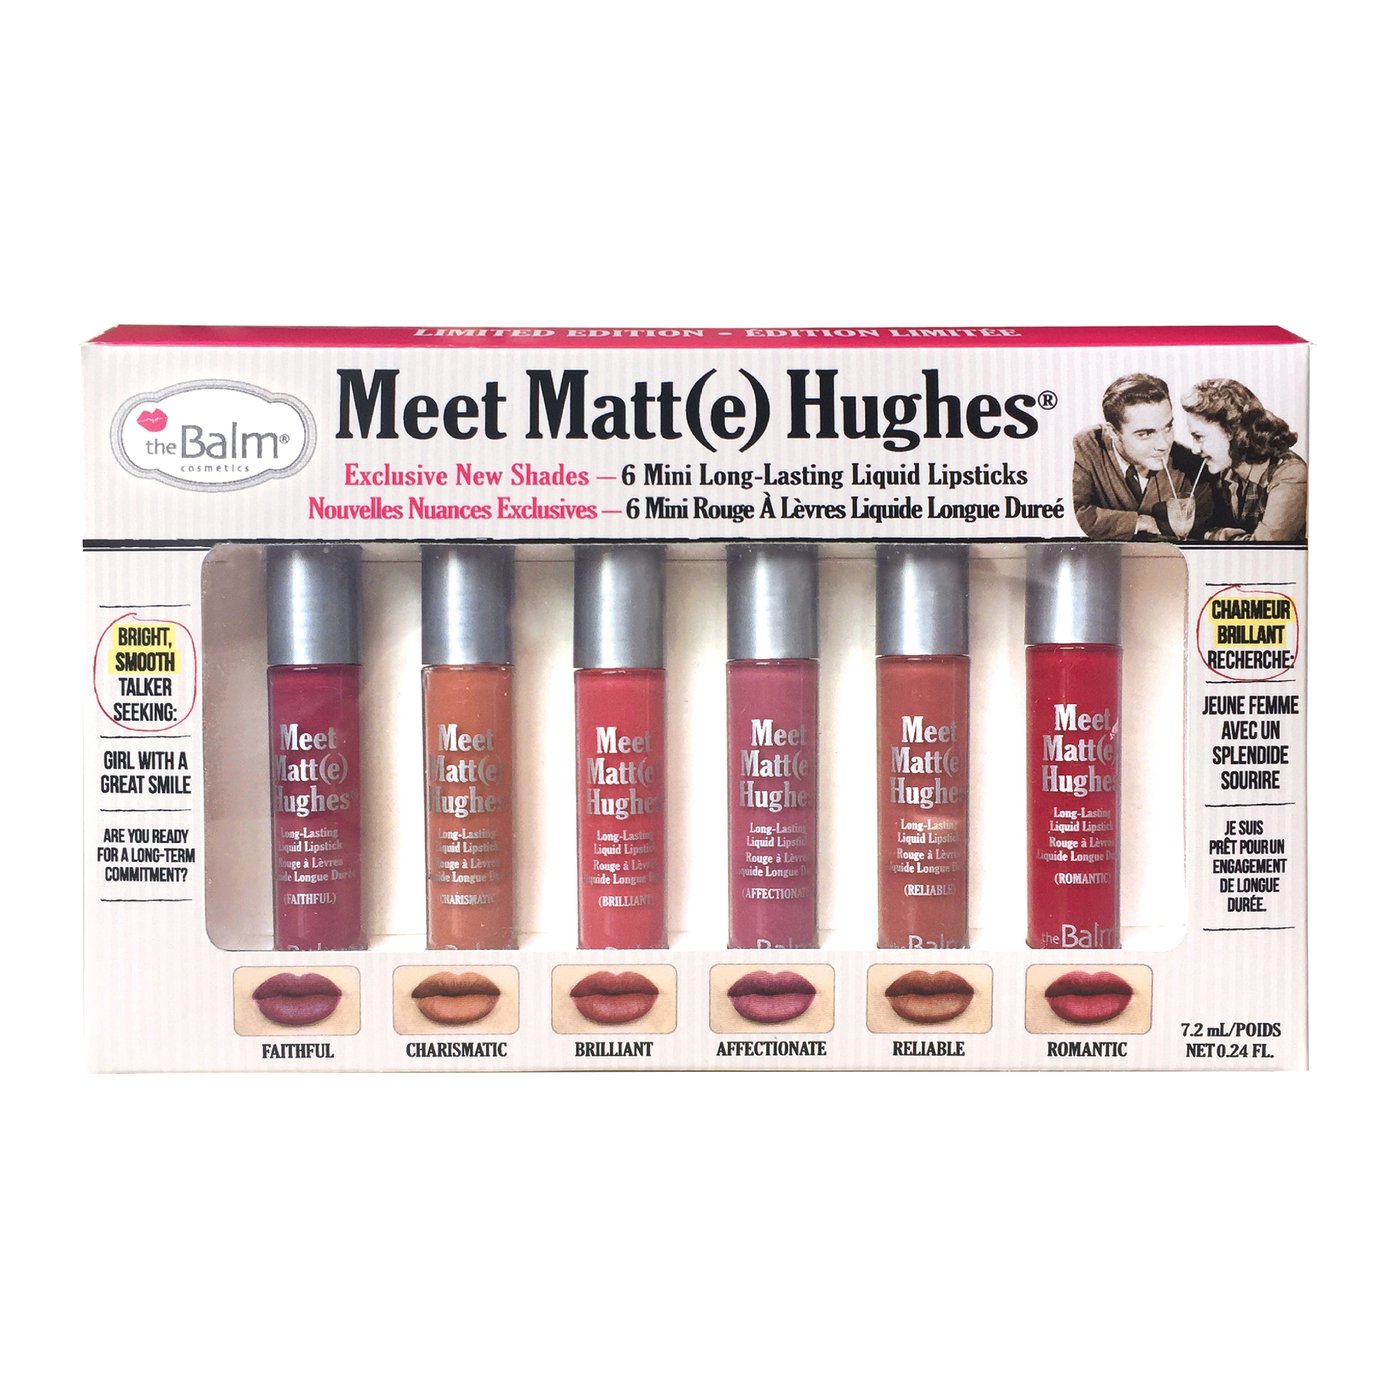 The Balm - Meet Matt Hughes - limited edition - Lipstick